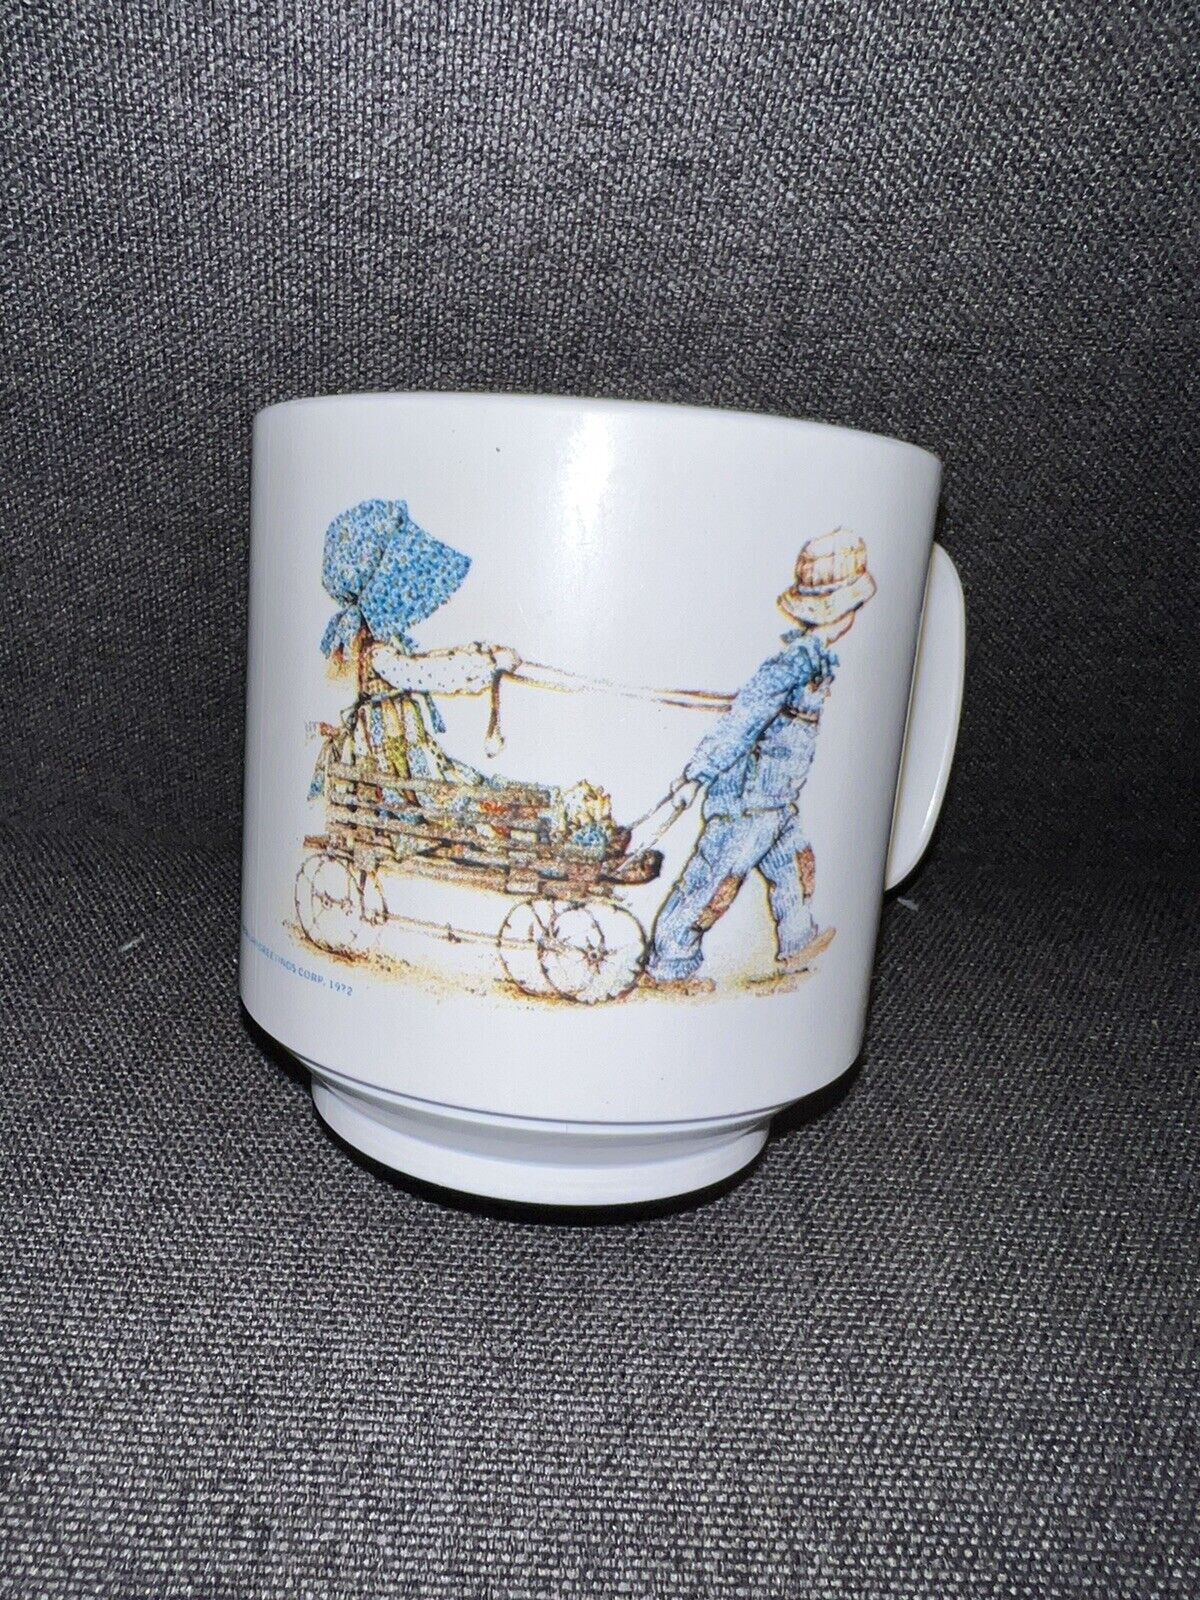 Vintage Oneida Ware 4309 Plastic Holly Hobbie Cup